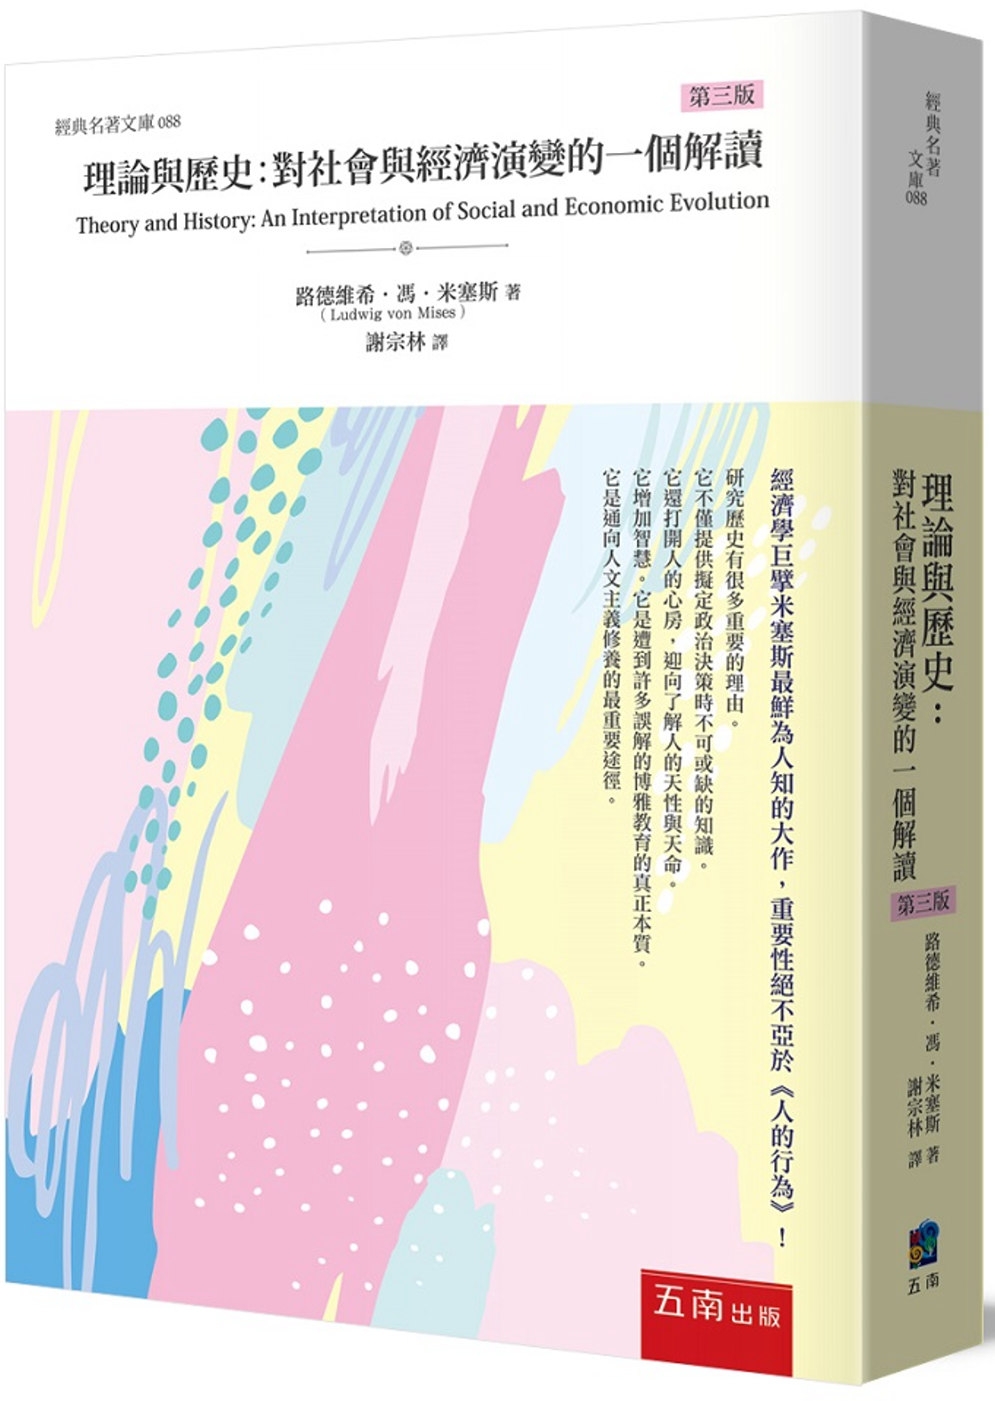 理論與歷史：對社會與經濟演變的一個解讀(3版)